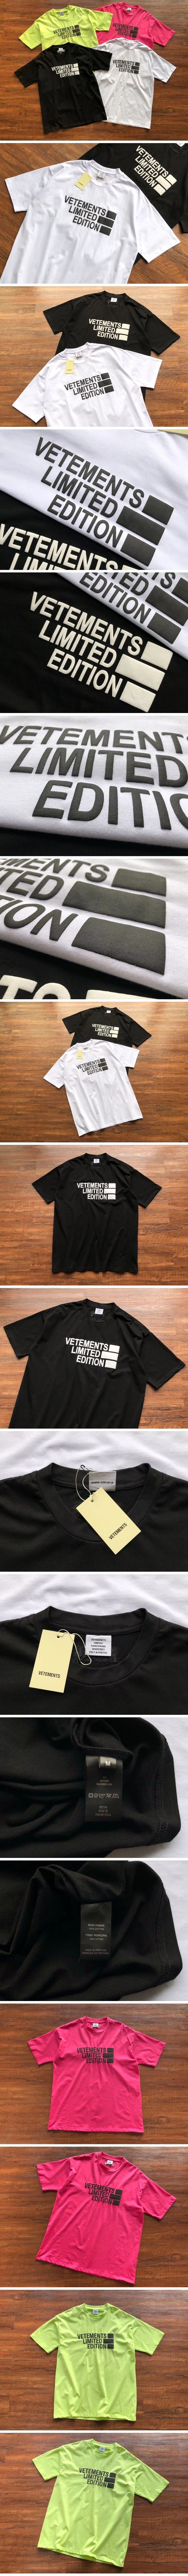 Vetements Limited Edition Tee ヴェトモン リミテッドエディション Tシャツ